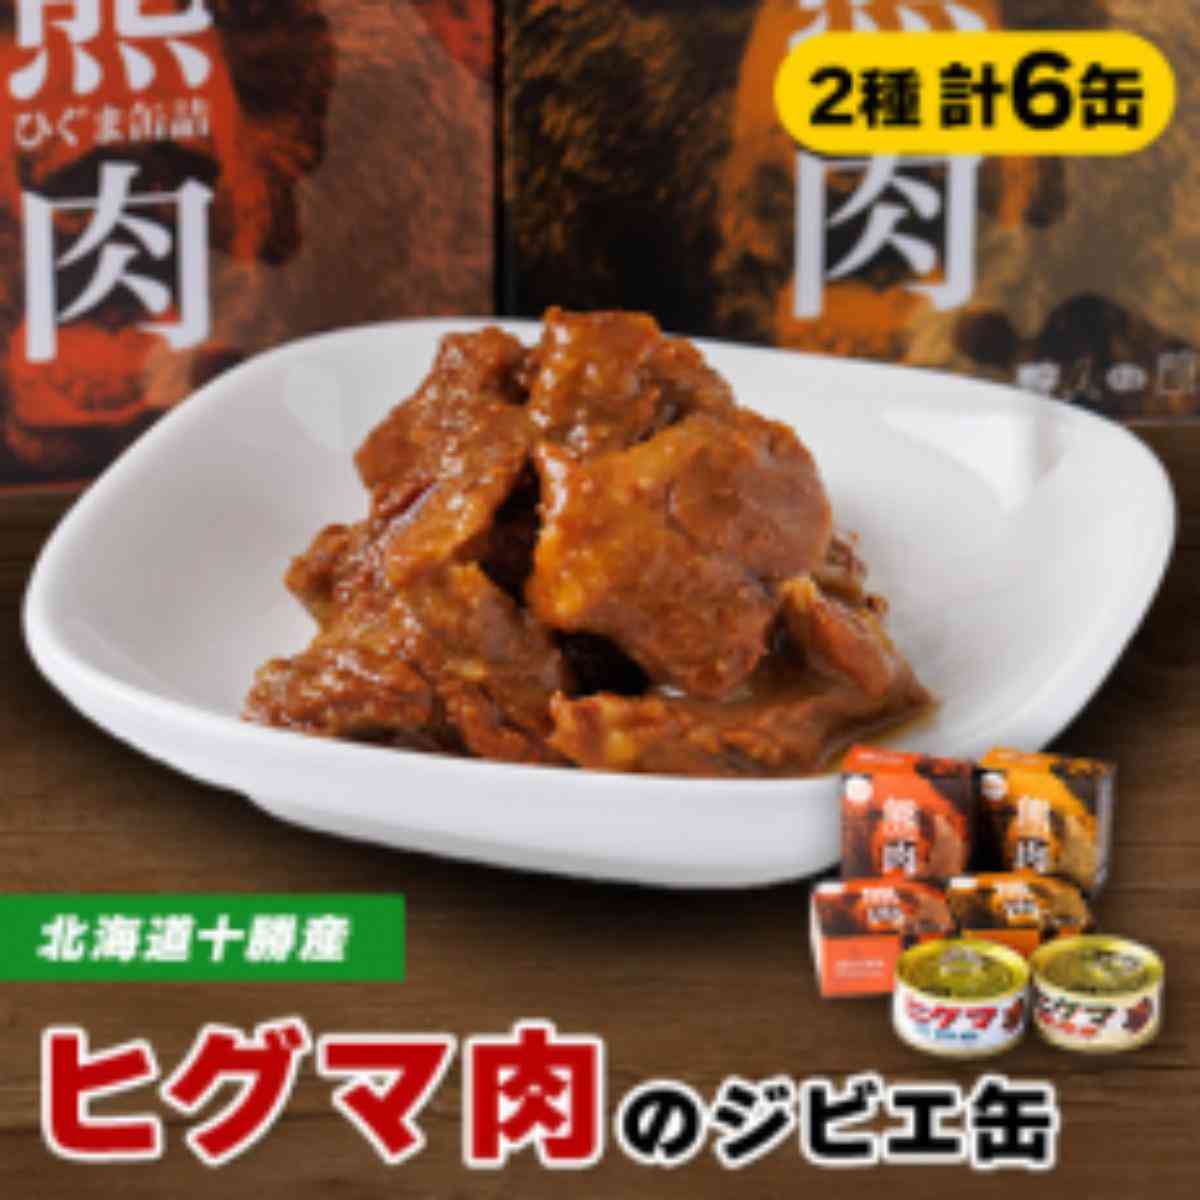 【ジビエ】ひぐま肉 6缶セット(大和煮 3缶 味噌煮 3缶)